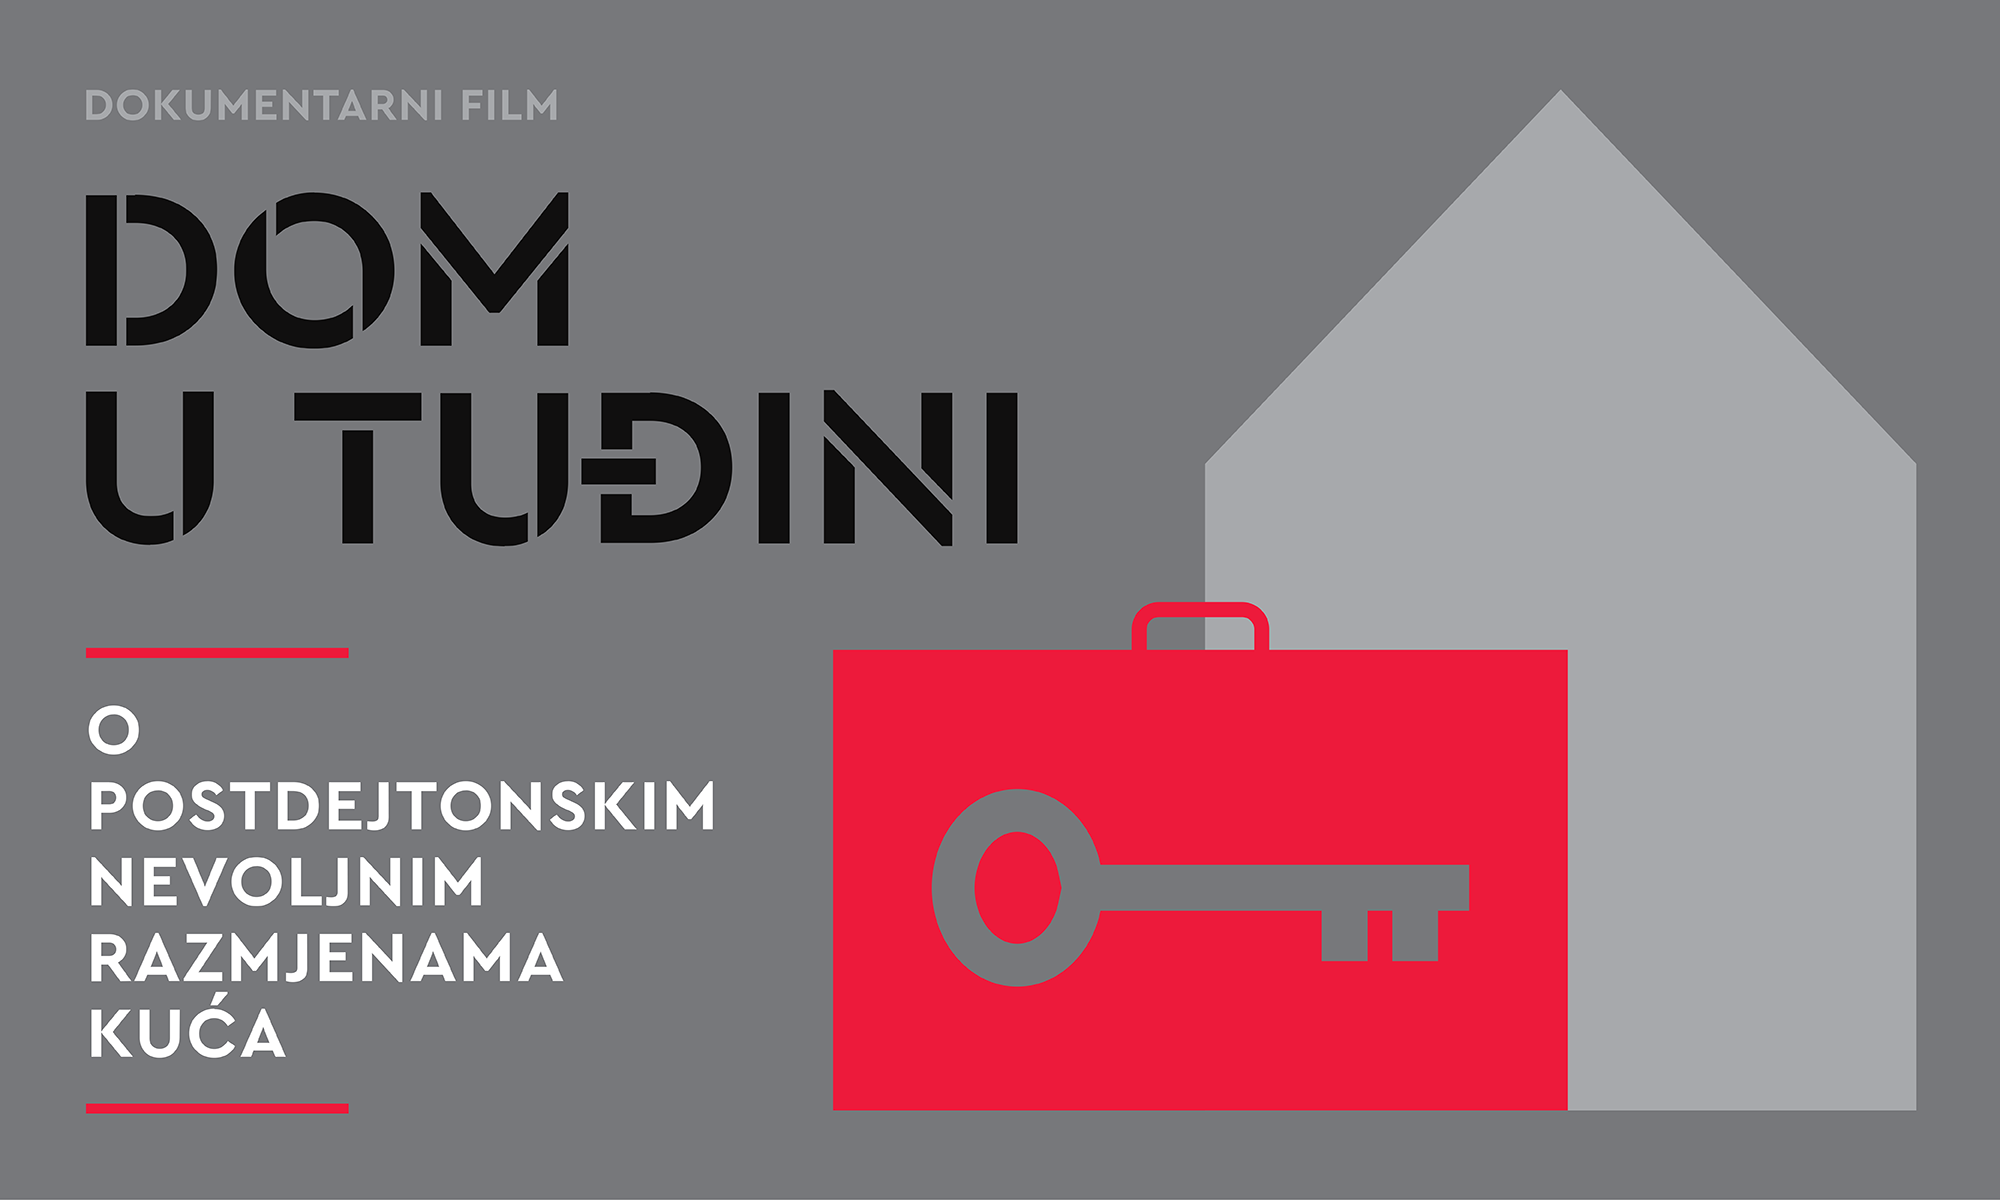 Premijerna projekcija dokumentarnog filma “Dom u tuđini”